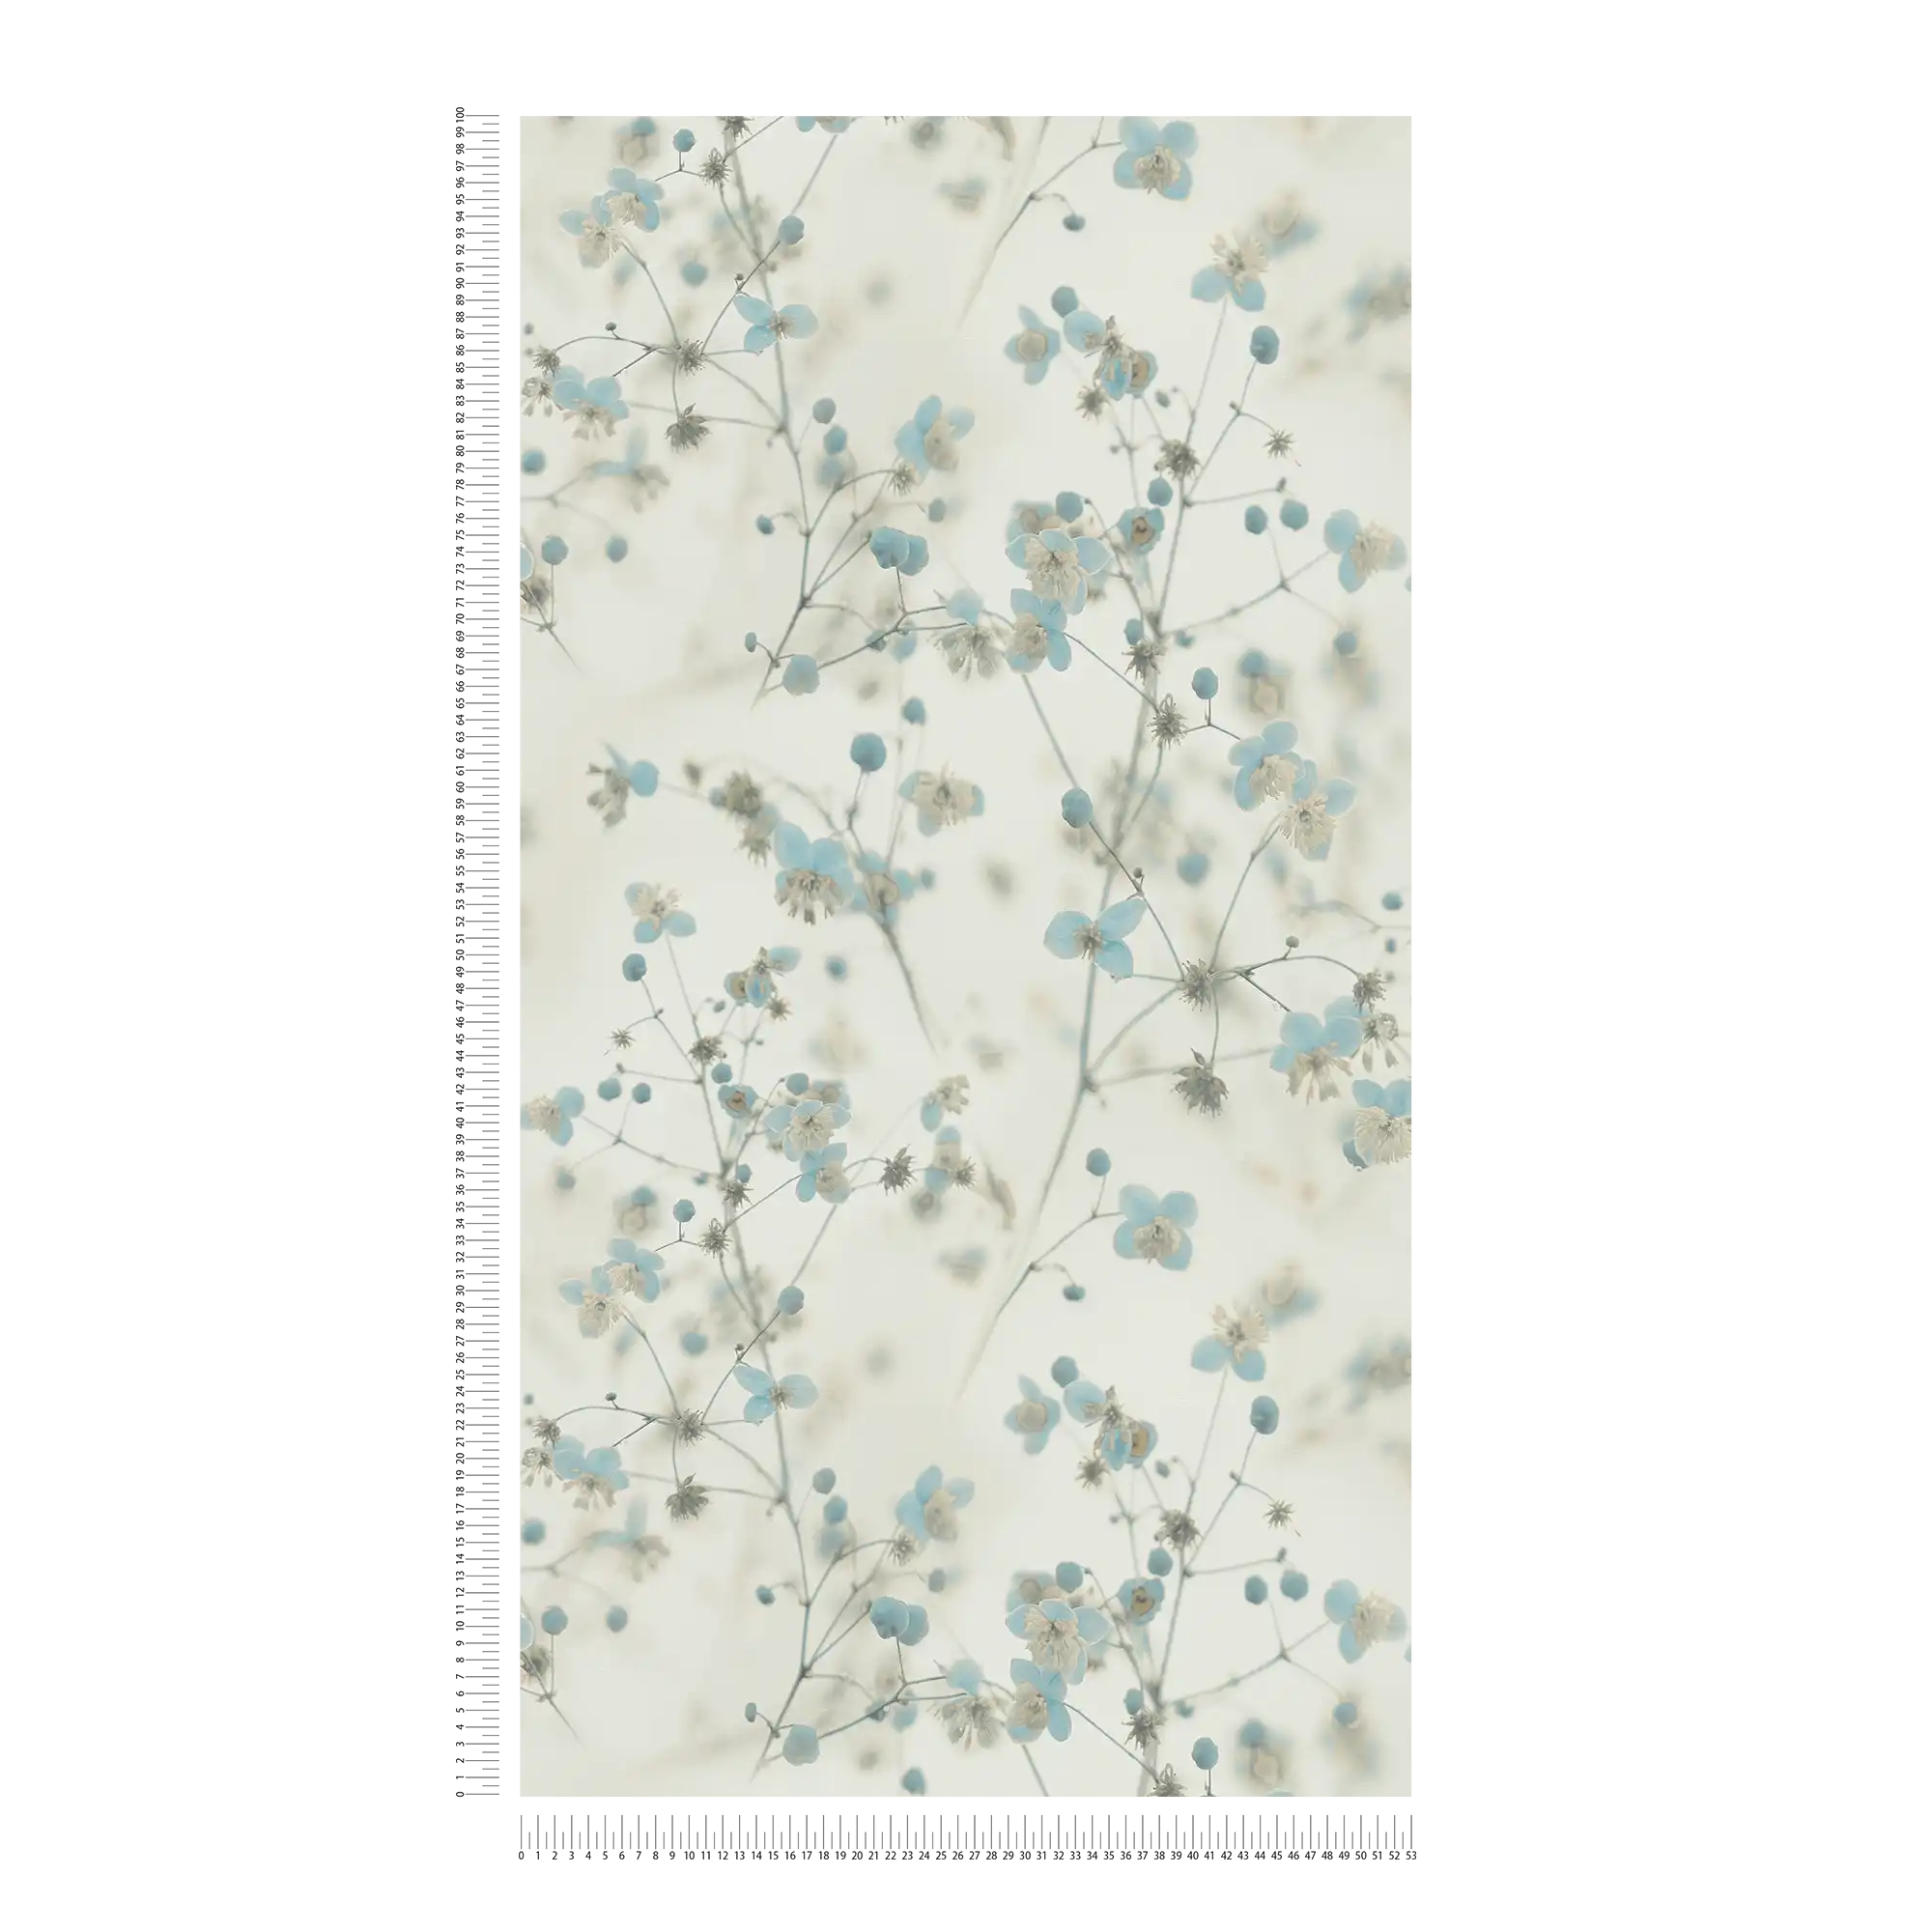             Papier peint romantique fleuri style collage photo - gris, bleu
        